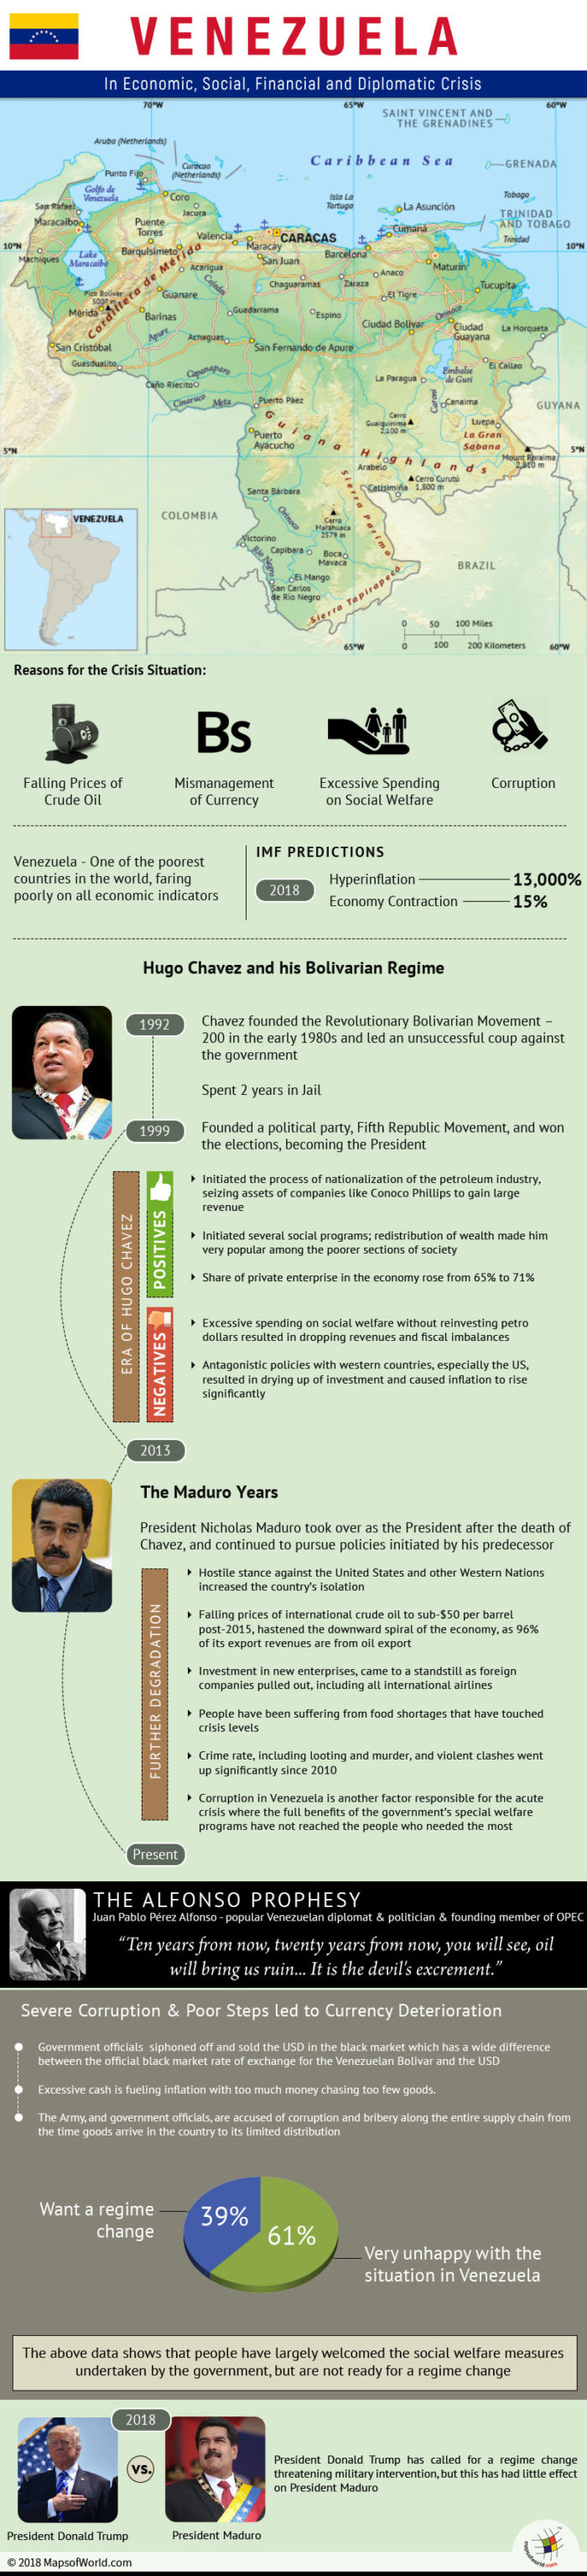 Infographic on Venezuela crisis